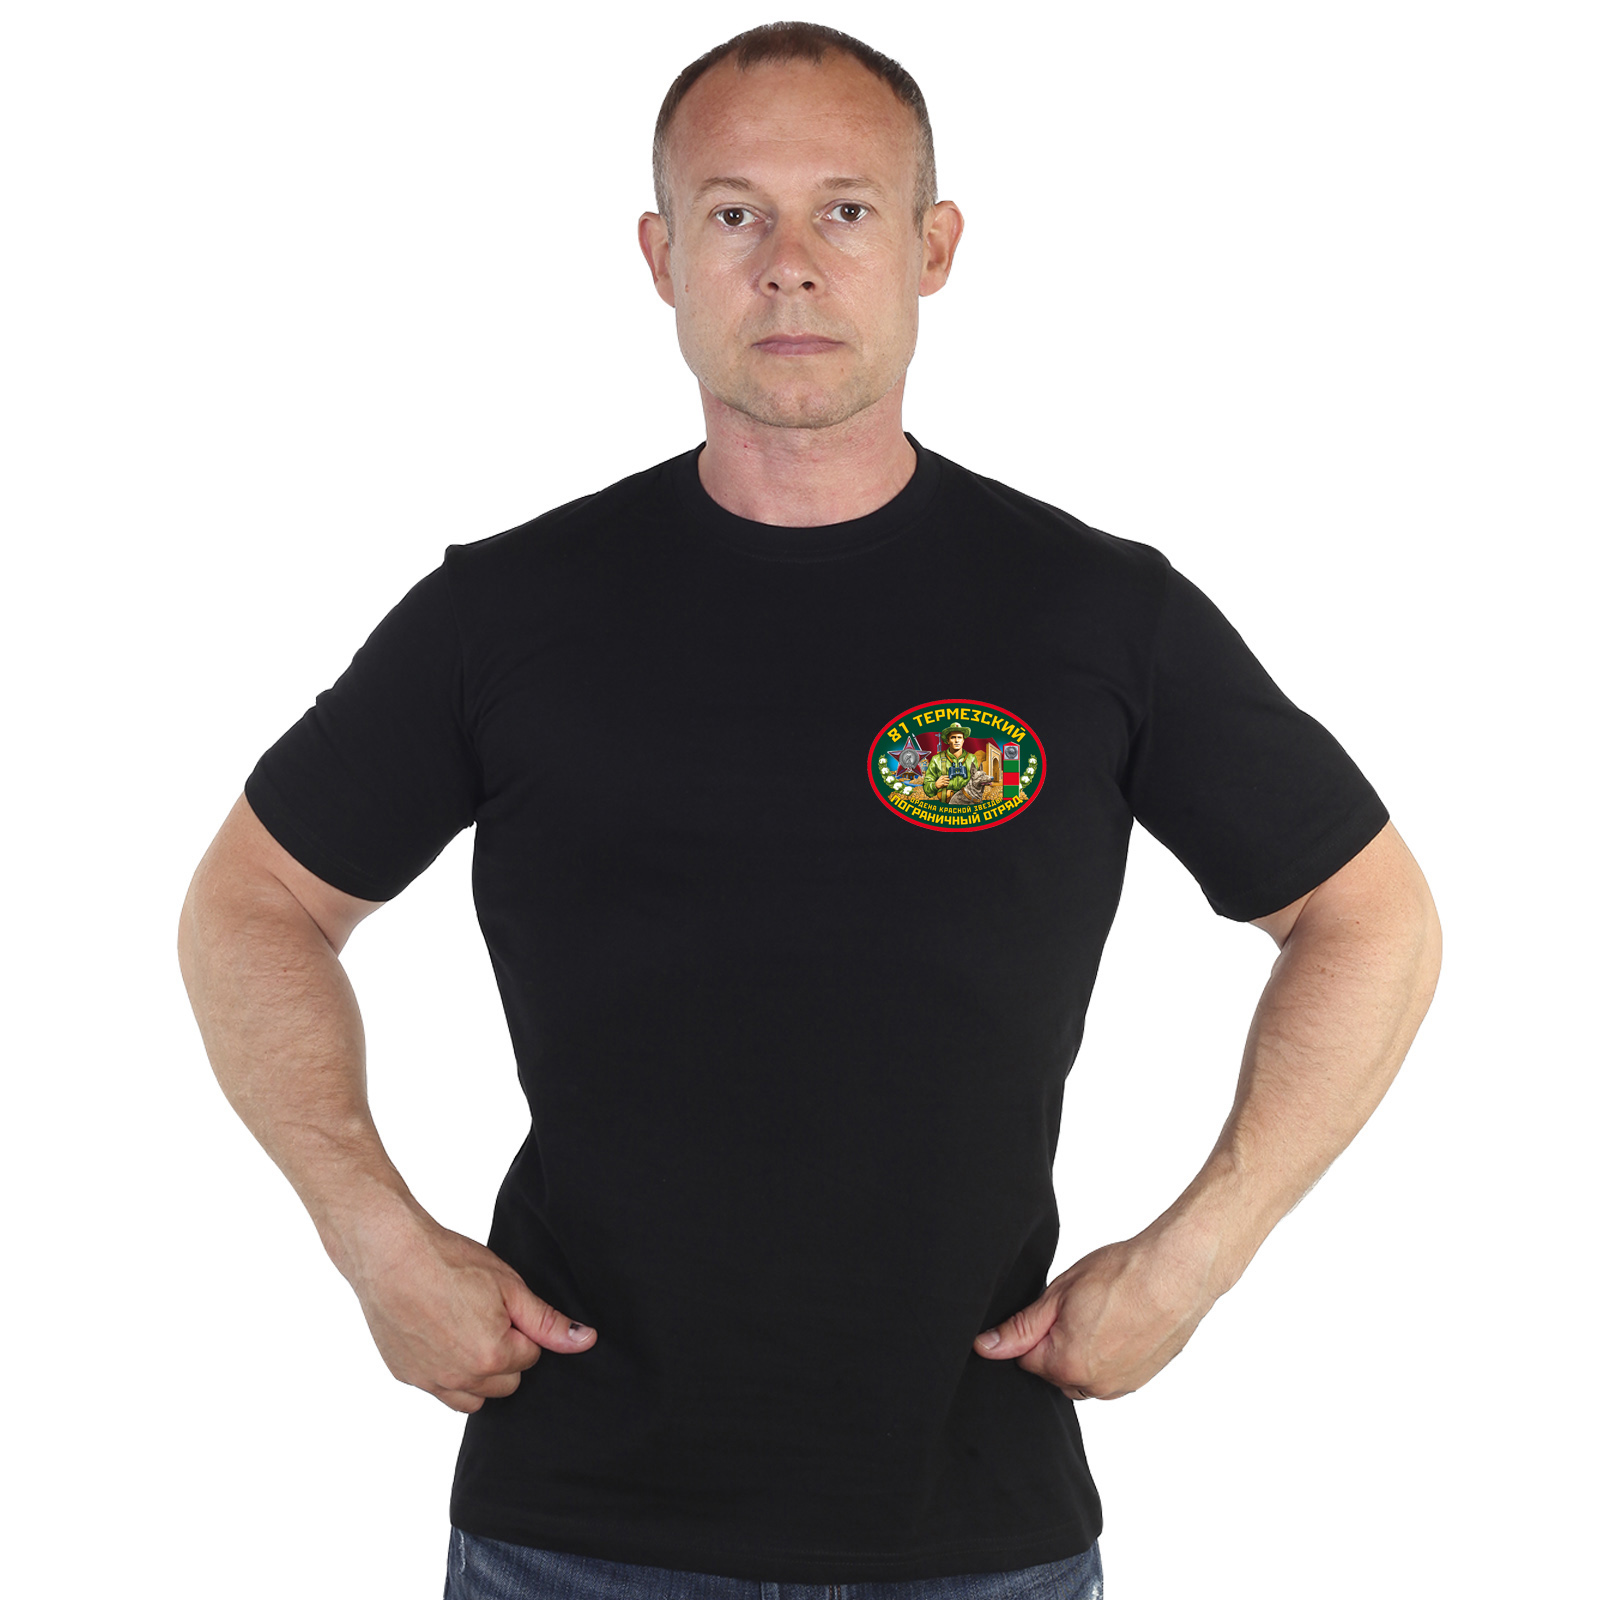 Чёрная футболка "81 Термезский пограничный отряд" 